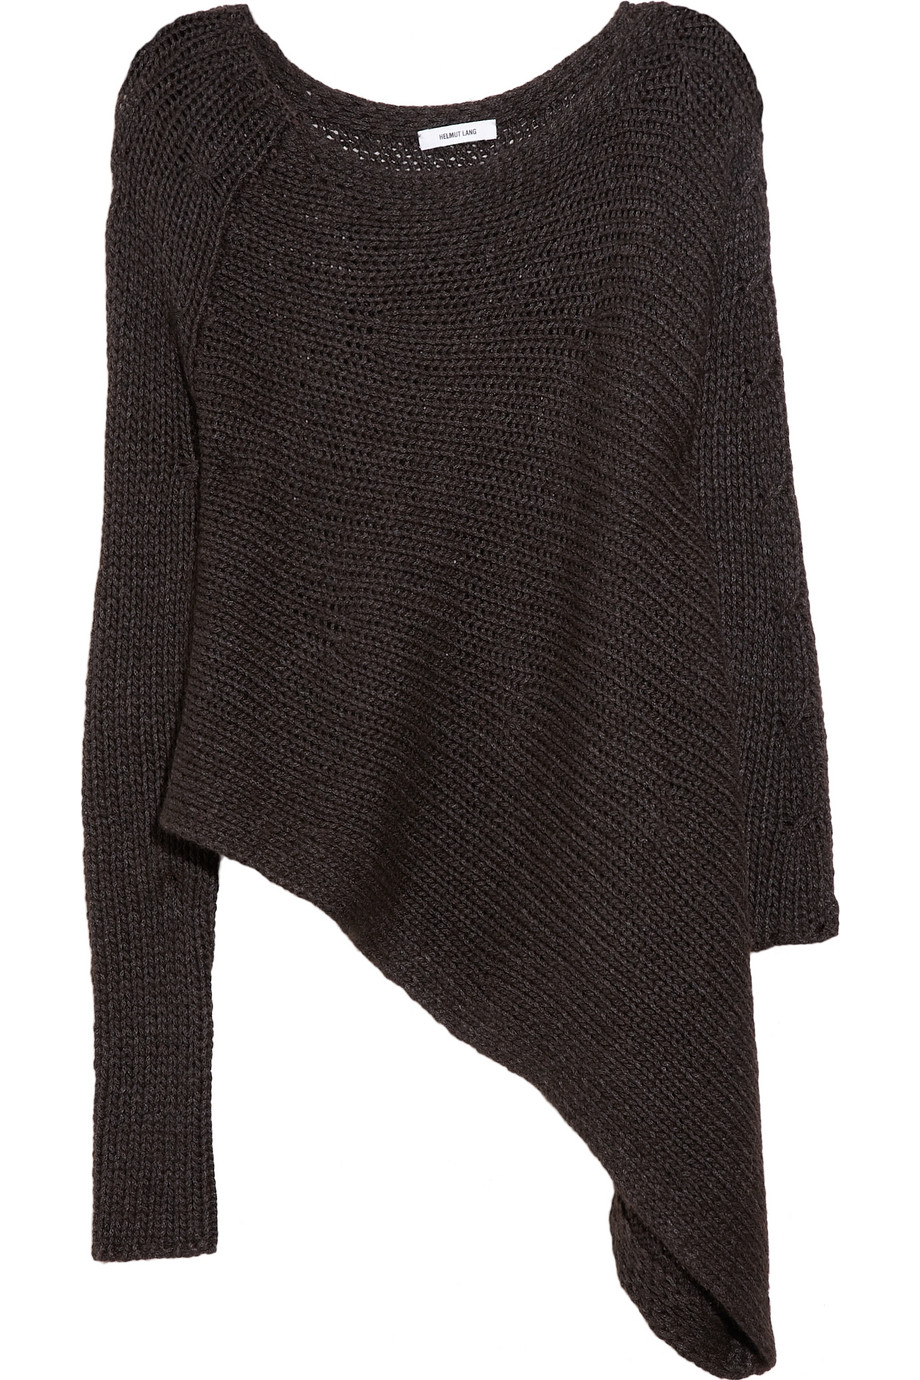 Lyst - Helmut Lang Asymmetric Sweater in Gray